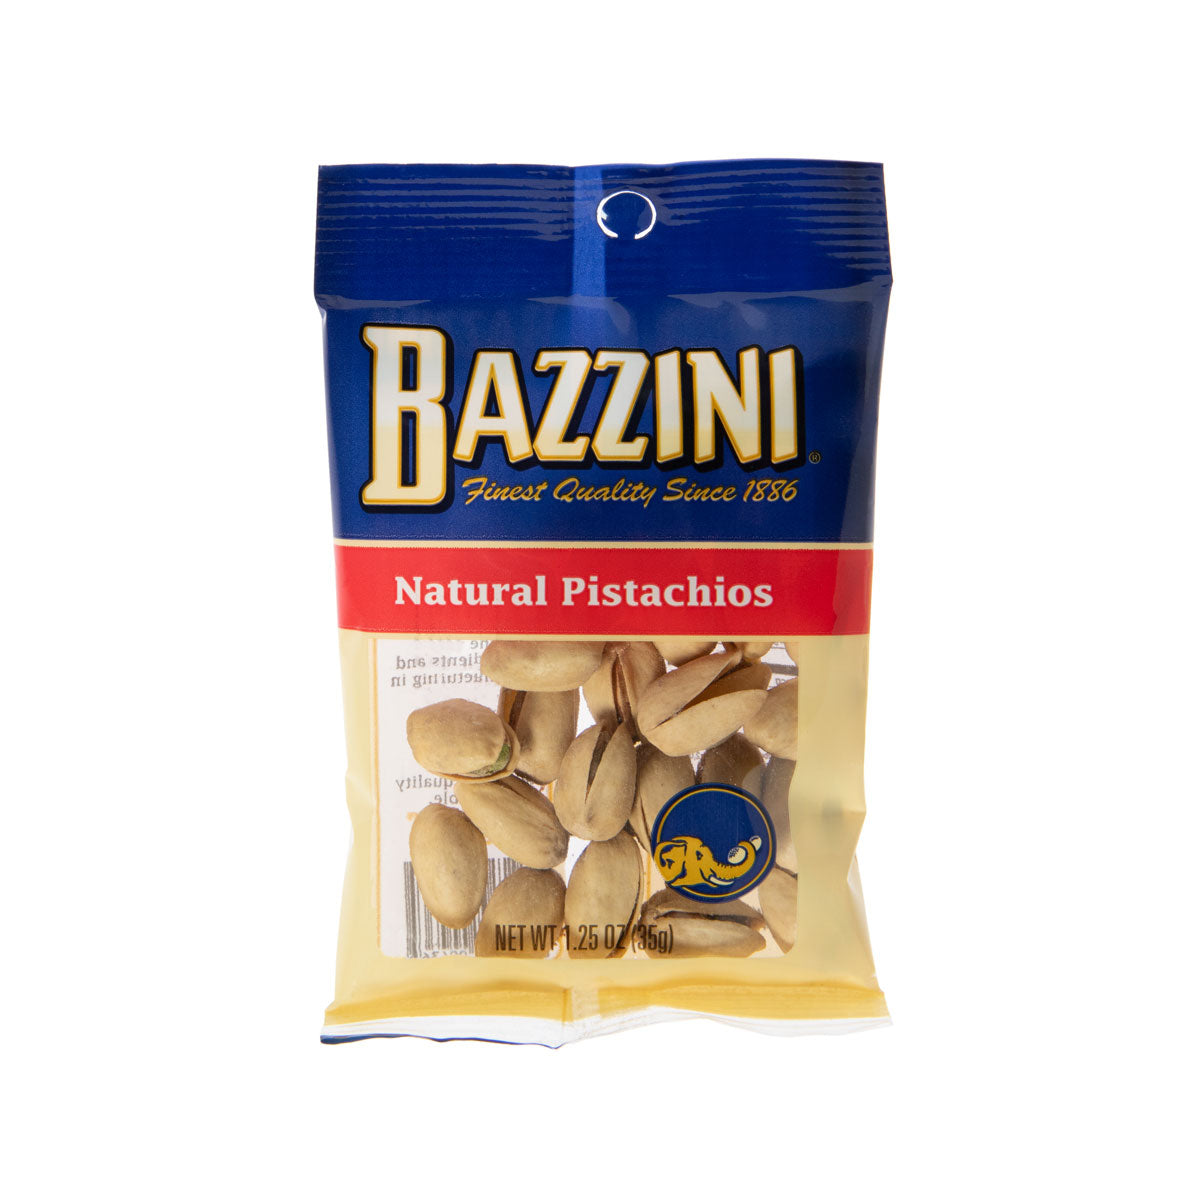 Bazzini Natural Pistachios 1.25 oz